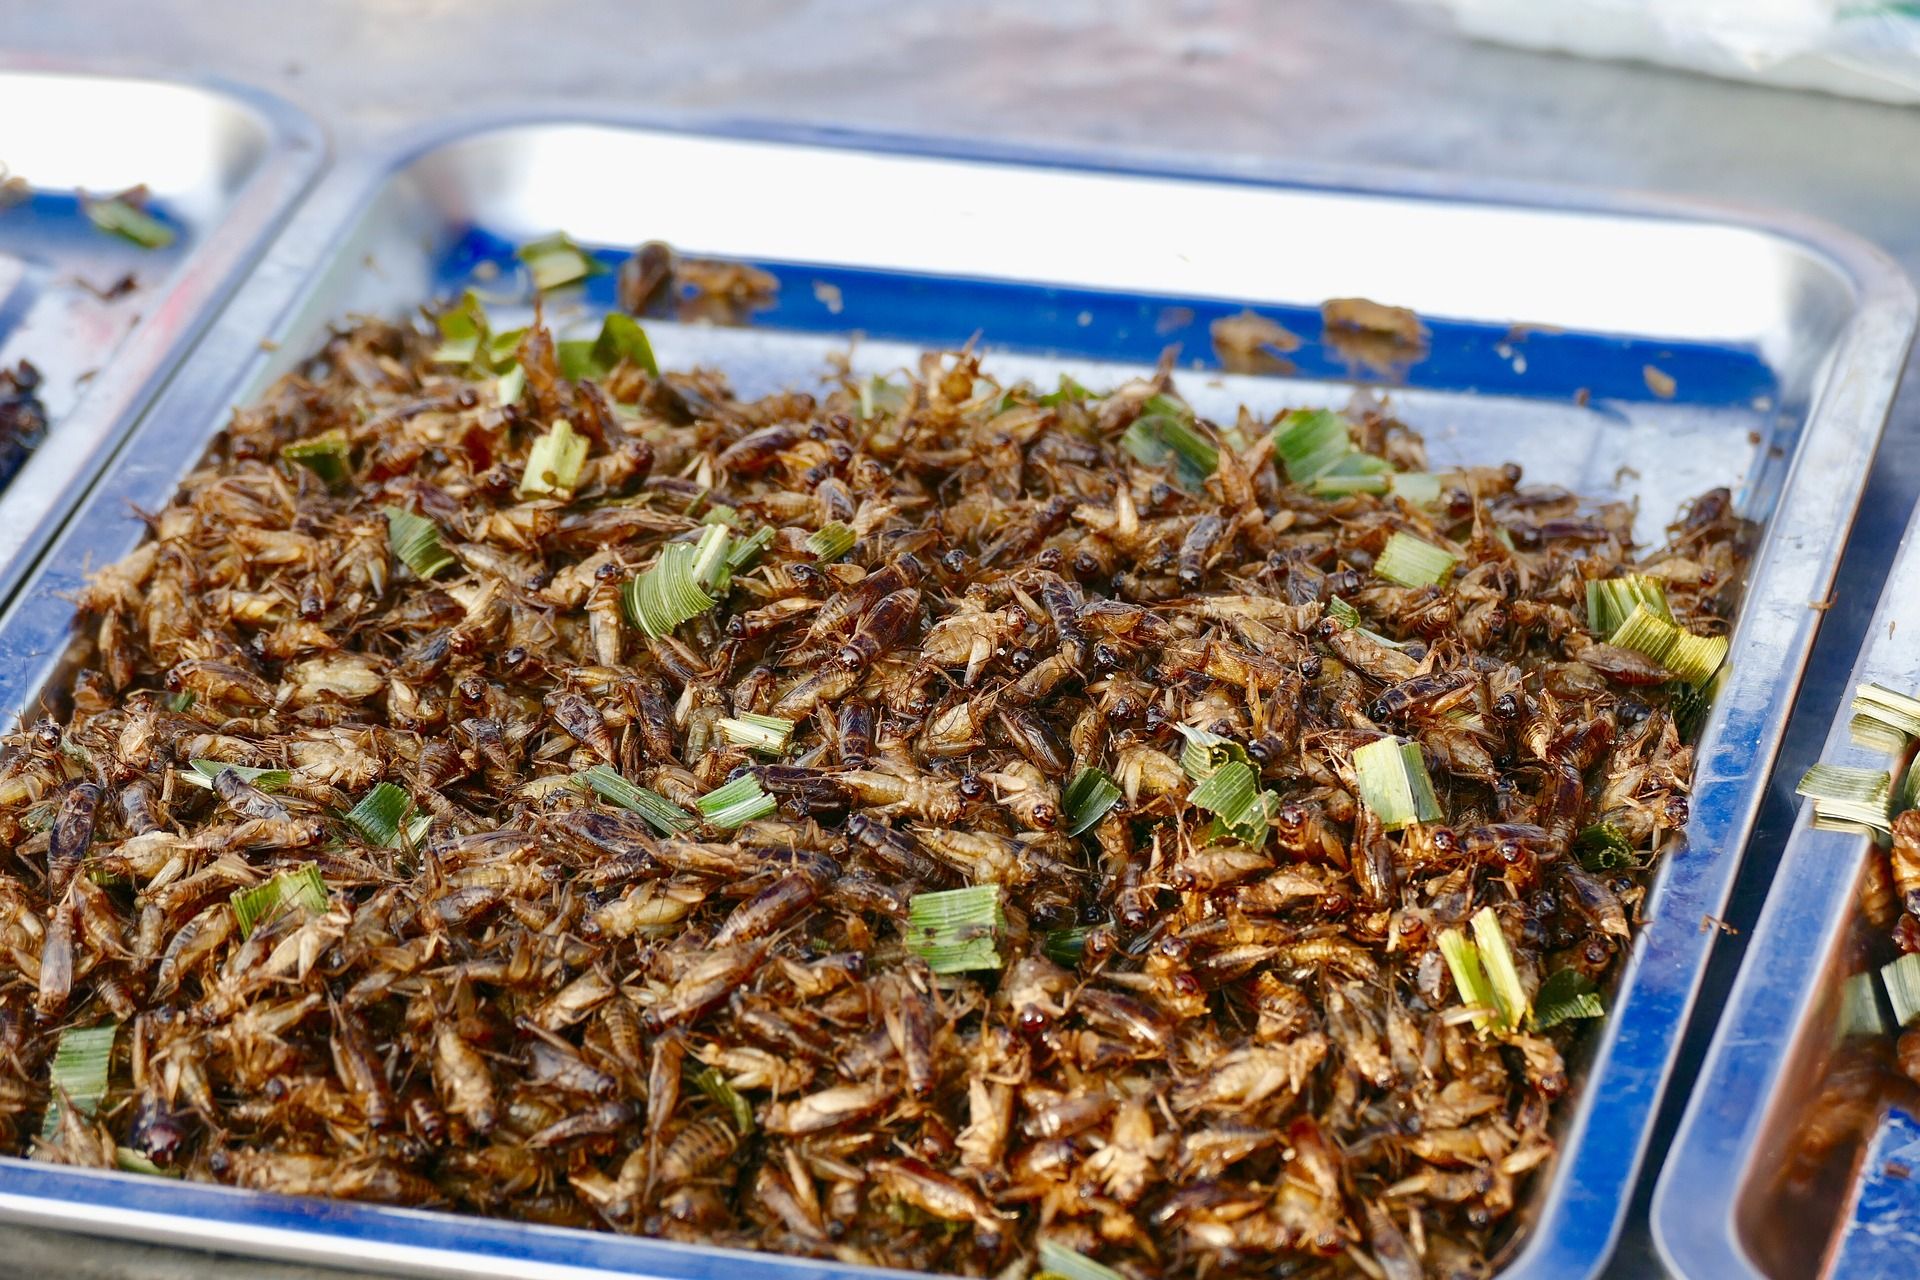 Bandeja con insectos comestible en un mercado de Tailandia / Foto: Pixabay